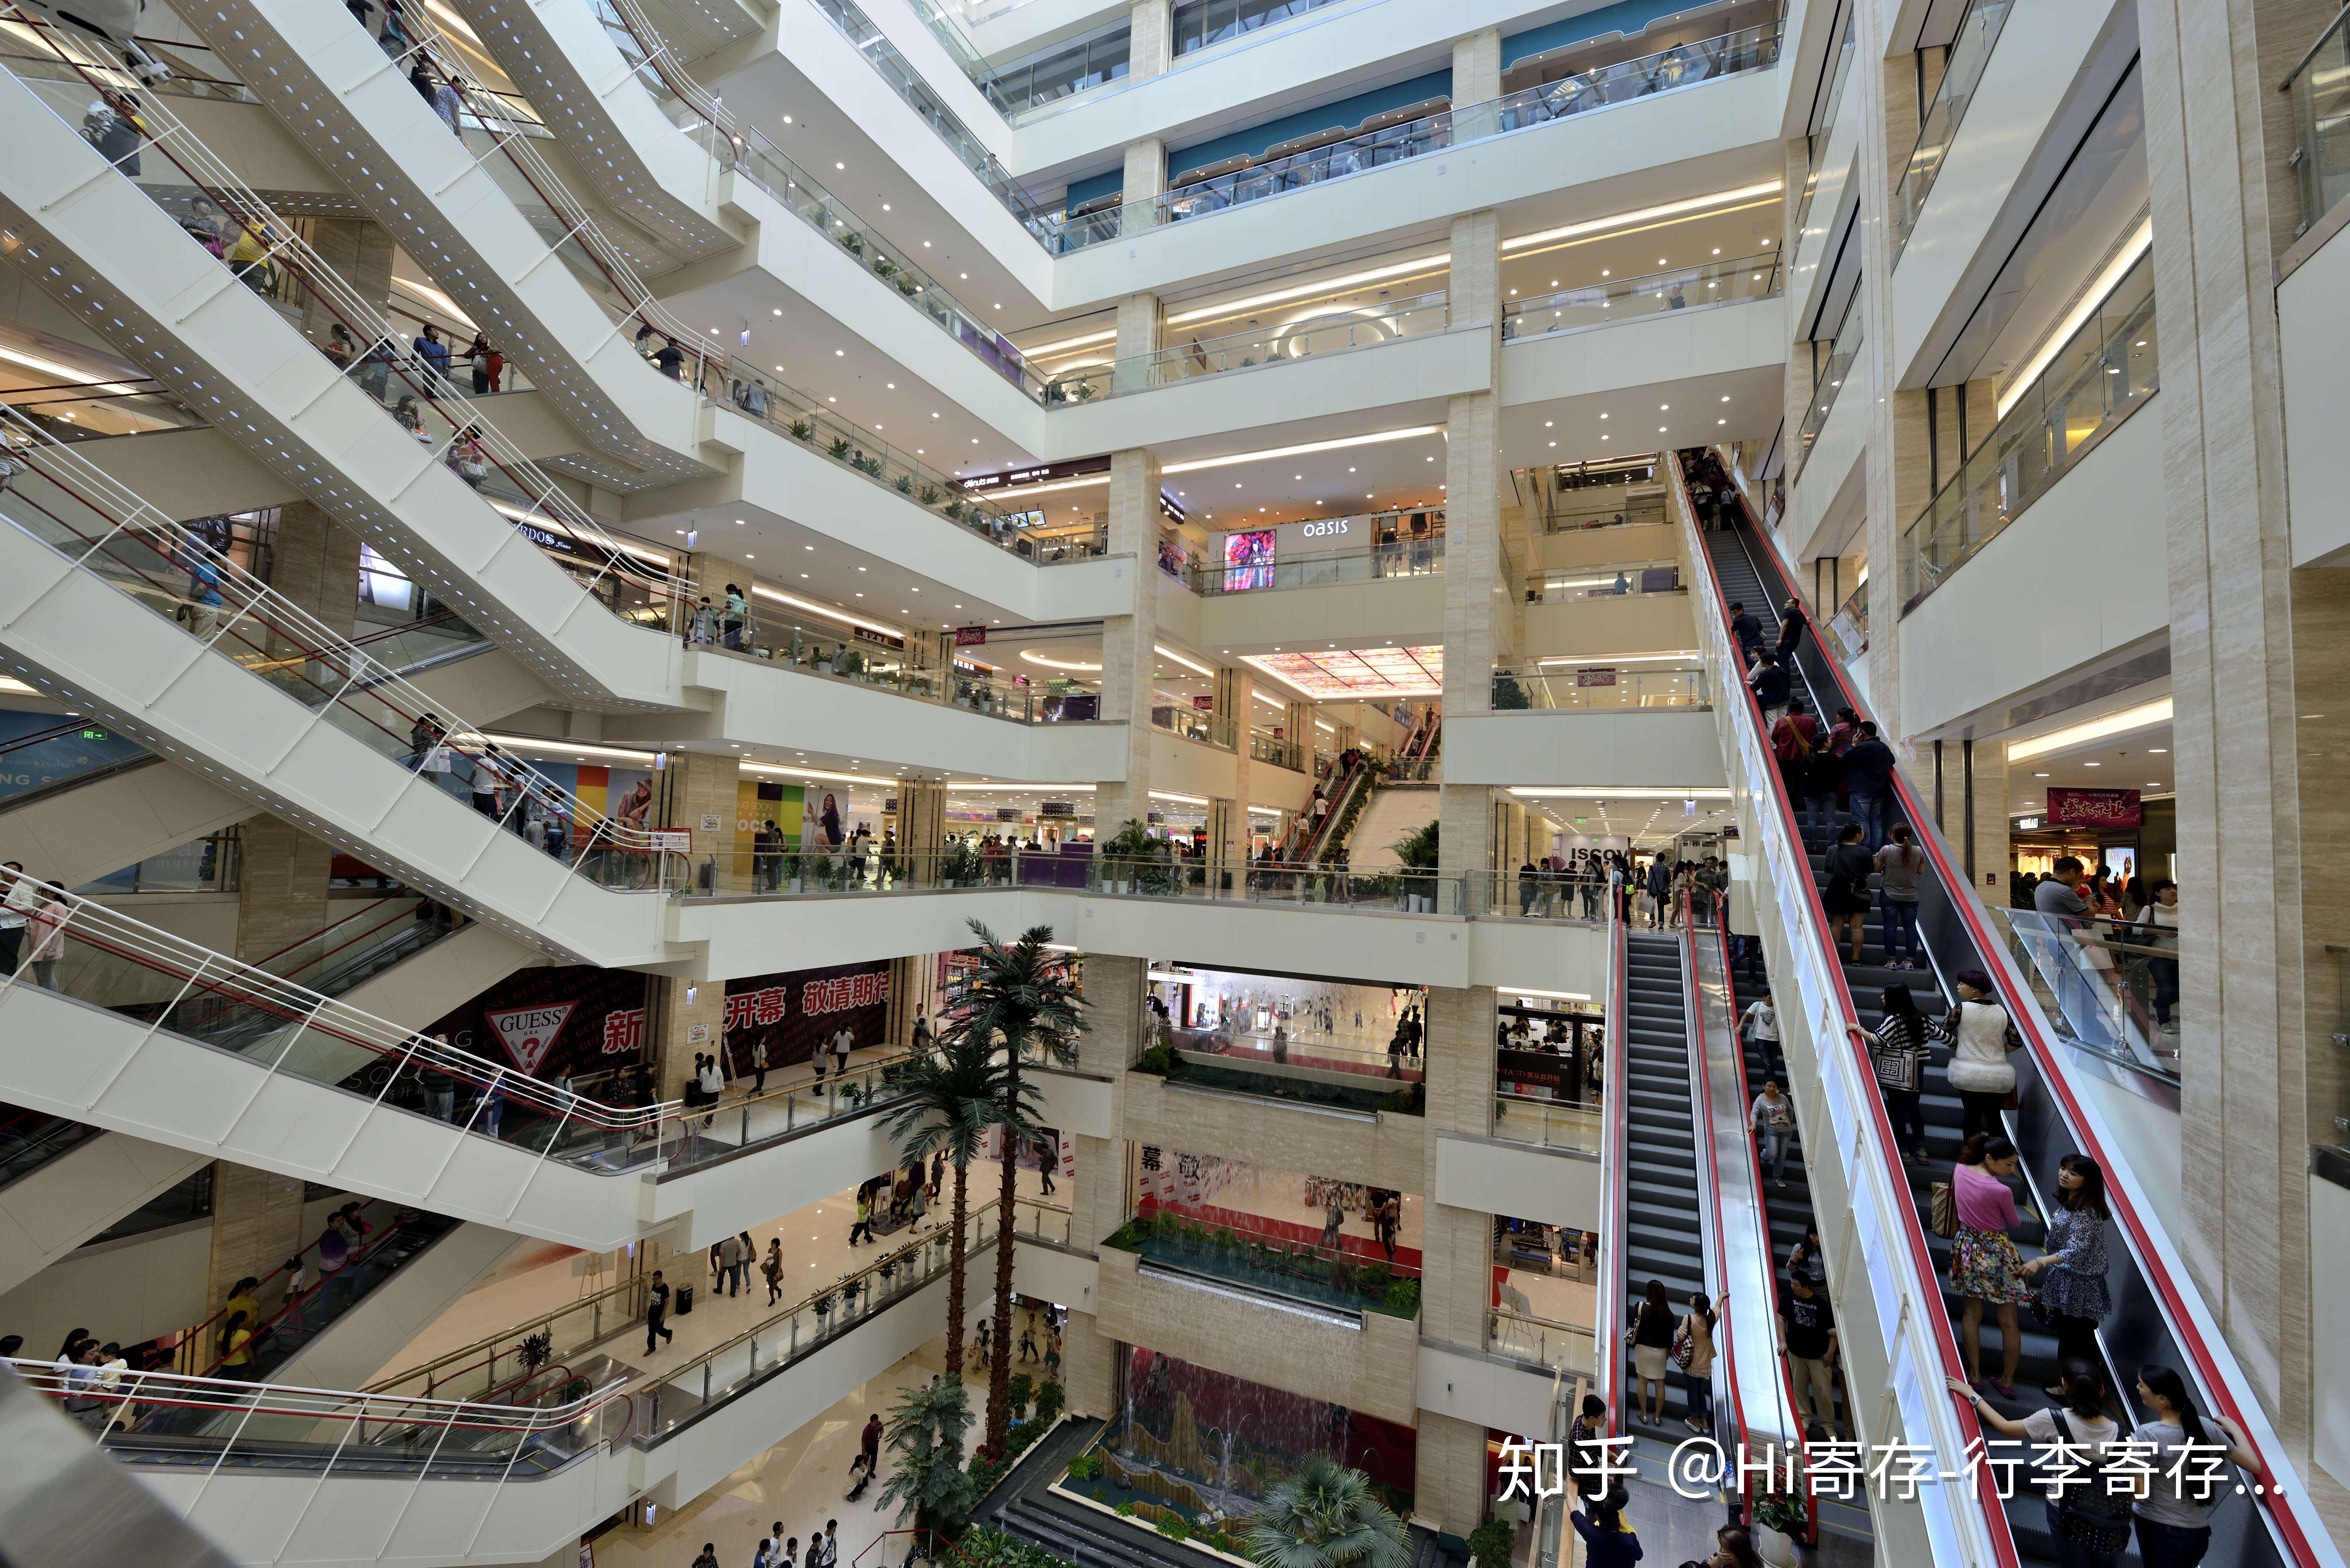 赛格国际购物中心:亚洲第一手扶梯,还有室内瀑布,负二楼和楼上很多吃